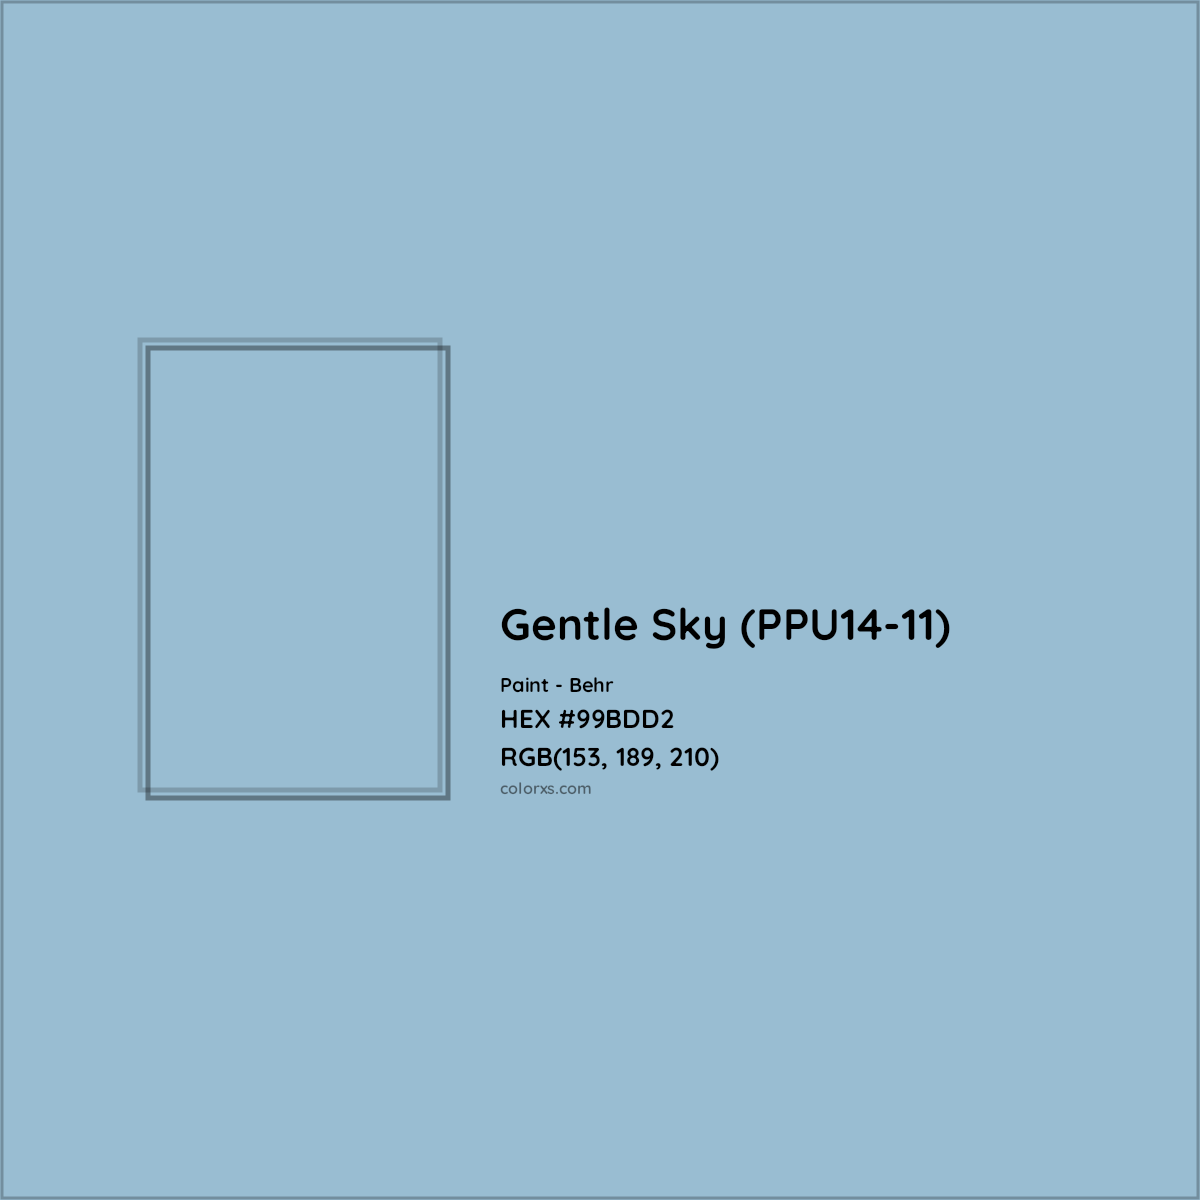 HEX #99BDD2 Gentle Sky (PPU14-11) Paint Behr - Color Code